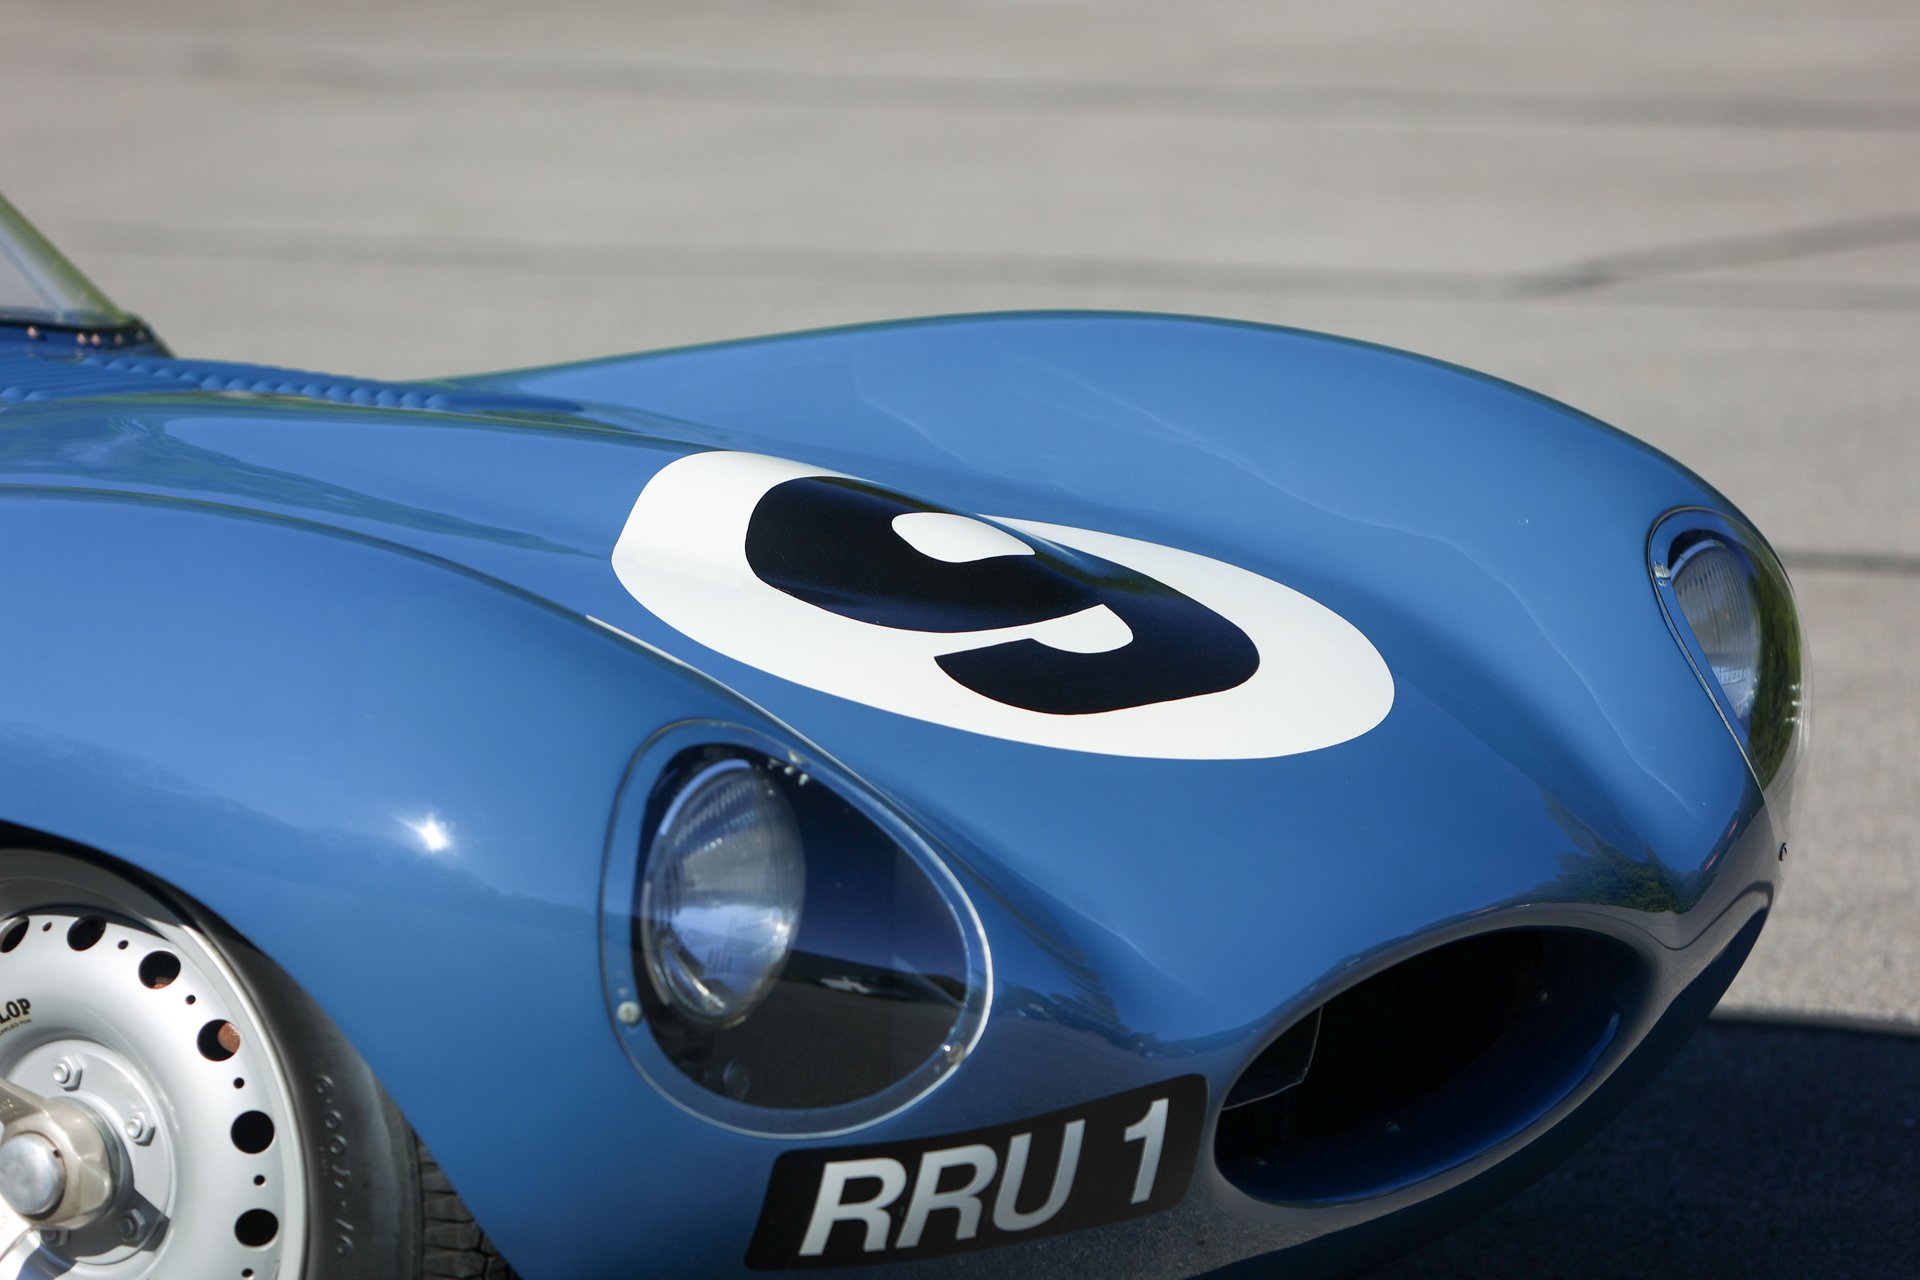 1955 jaguar d type